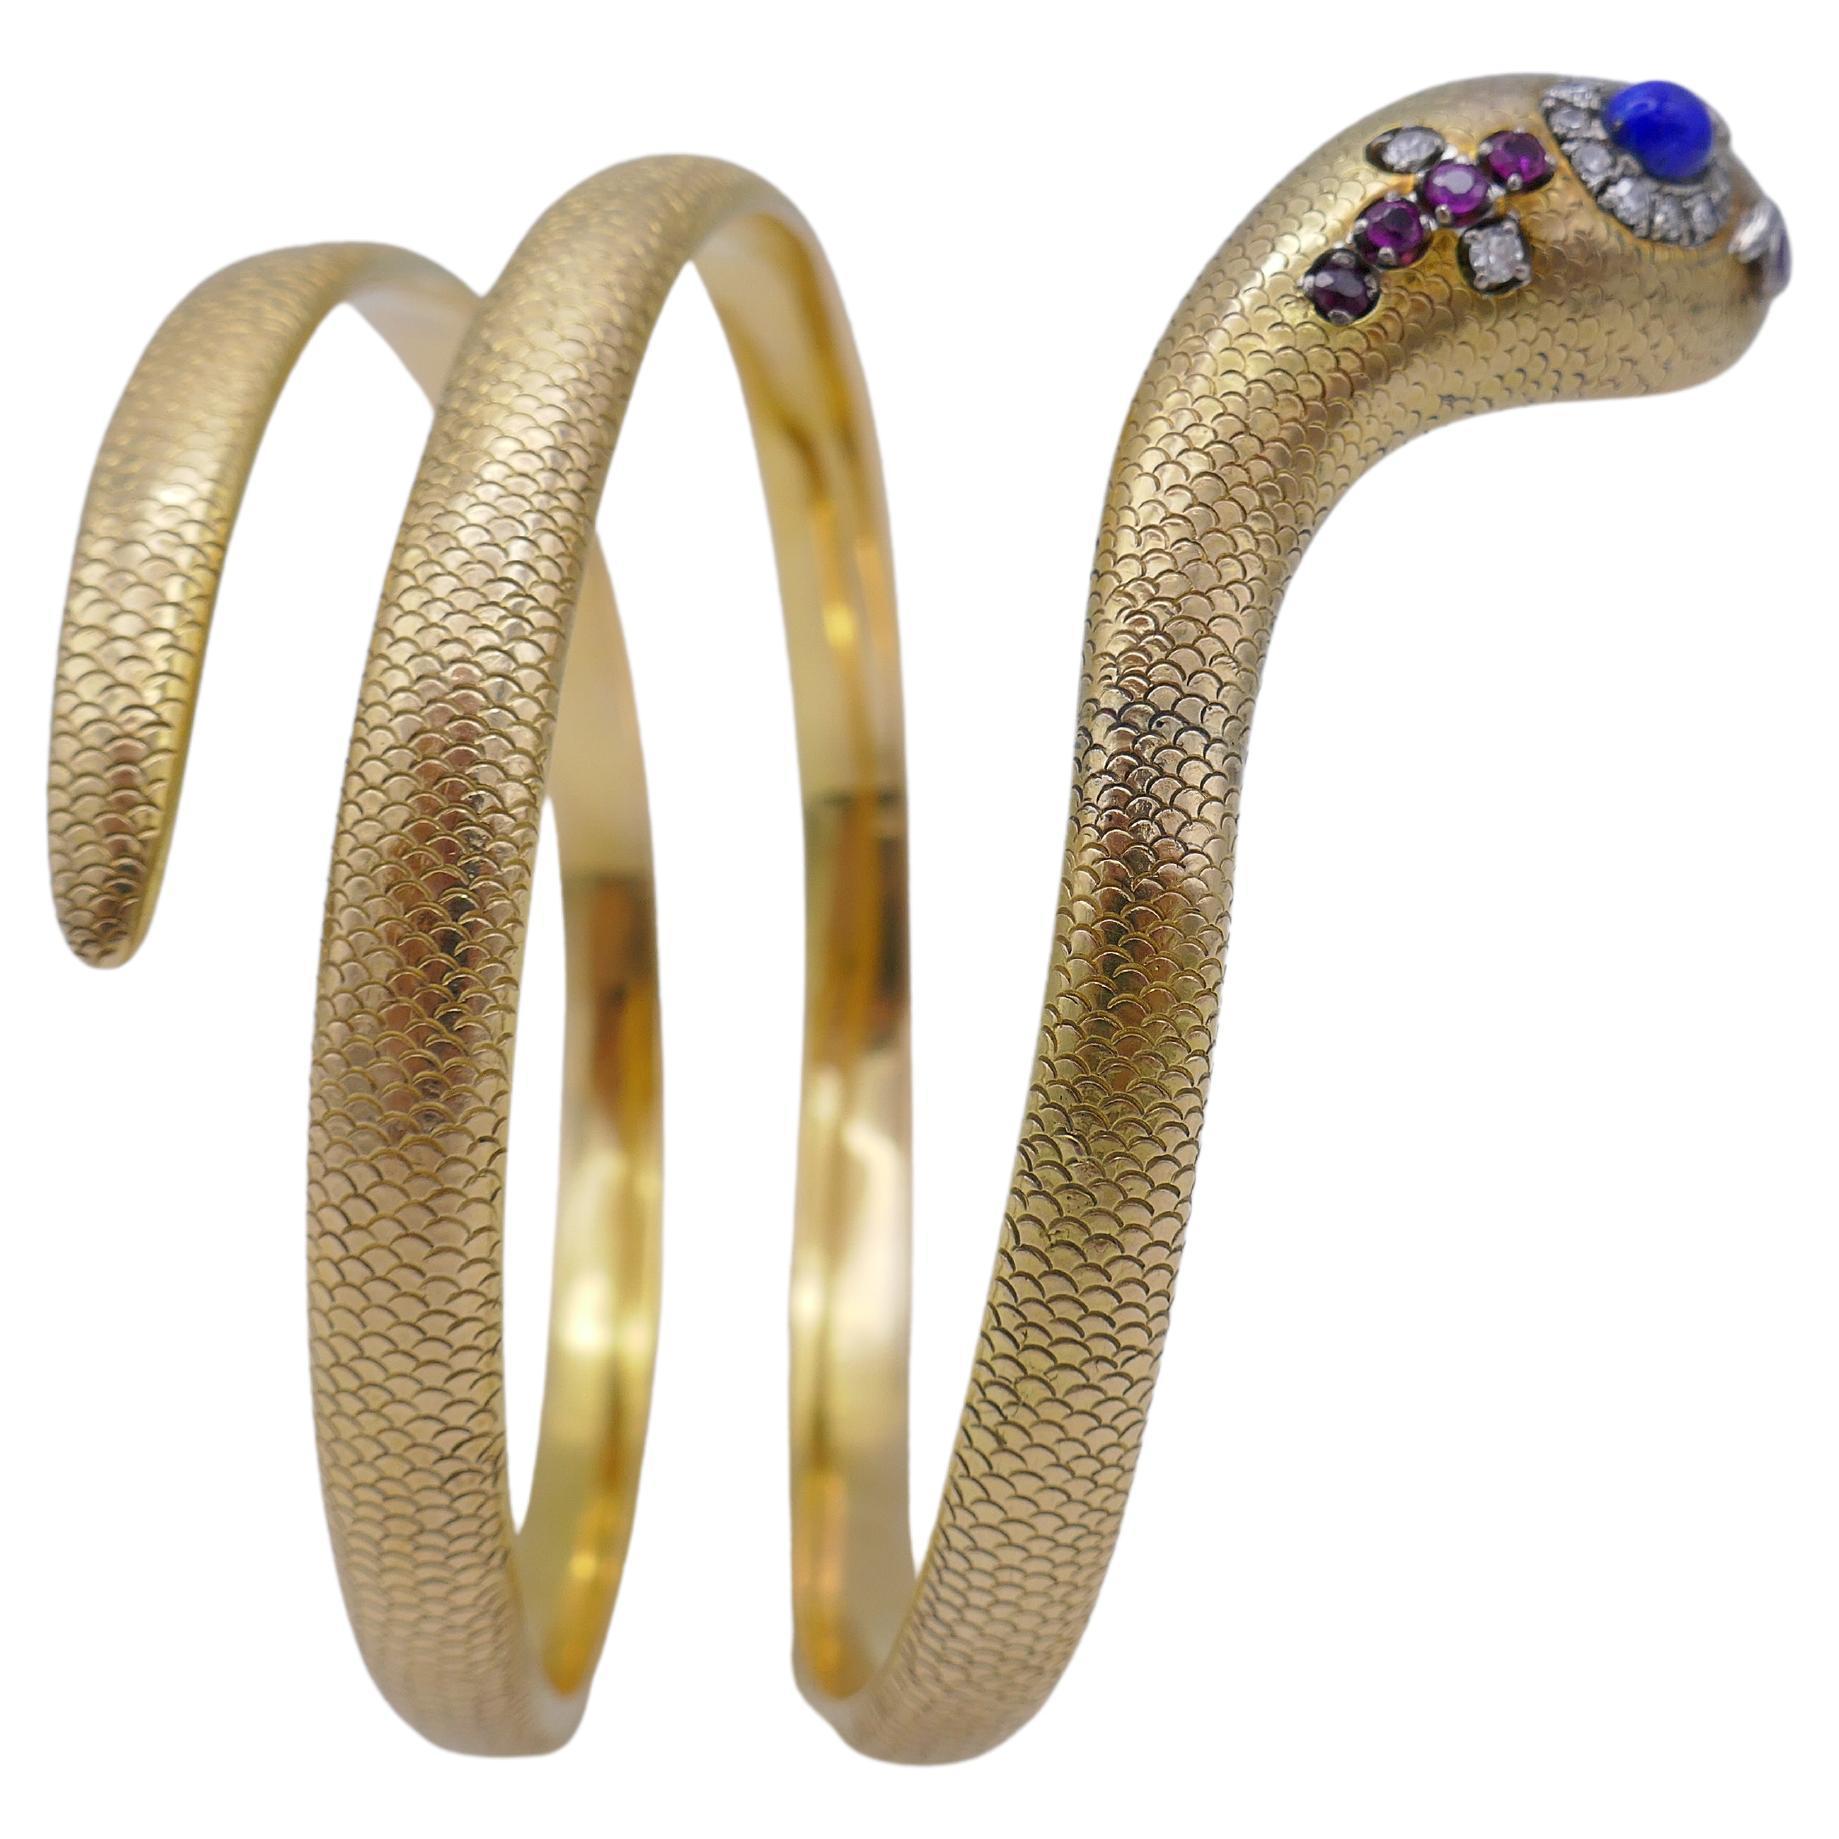 Ein exquisites Schlangenarmband aus Gold mit Edelsteinen.
Das Armband ist in Form einer aufsteigenden Schlange gestaltet, deren Kopf mit Lapis, Diamant, Rubin und Smaragd verziert ist. Die 